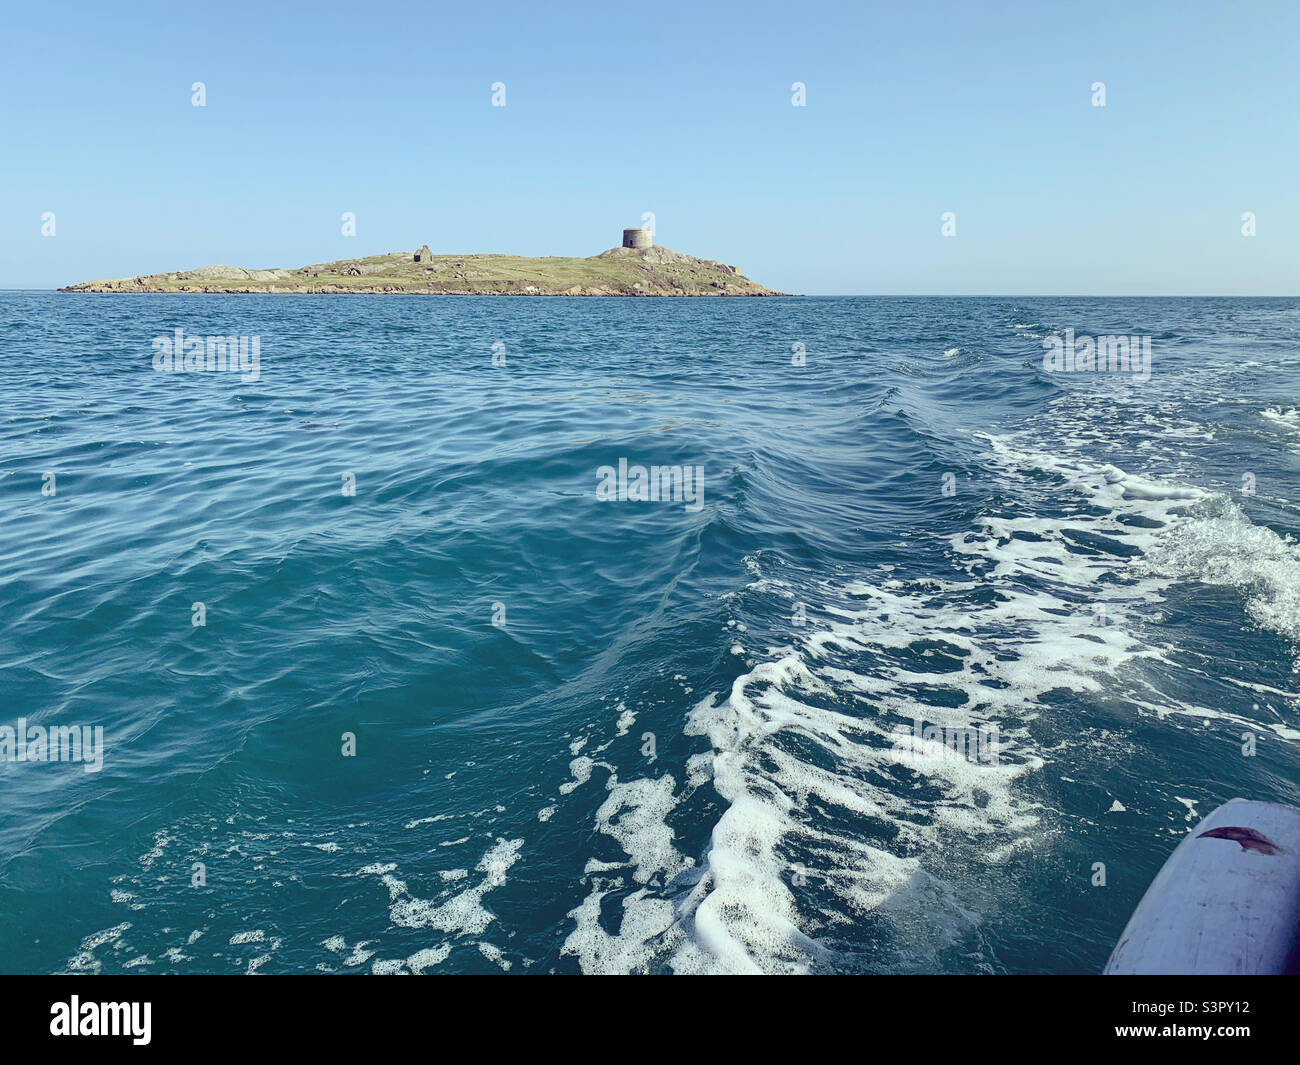 Dalkey Island from a boat. Dublin, Ireland. Stock Photo